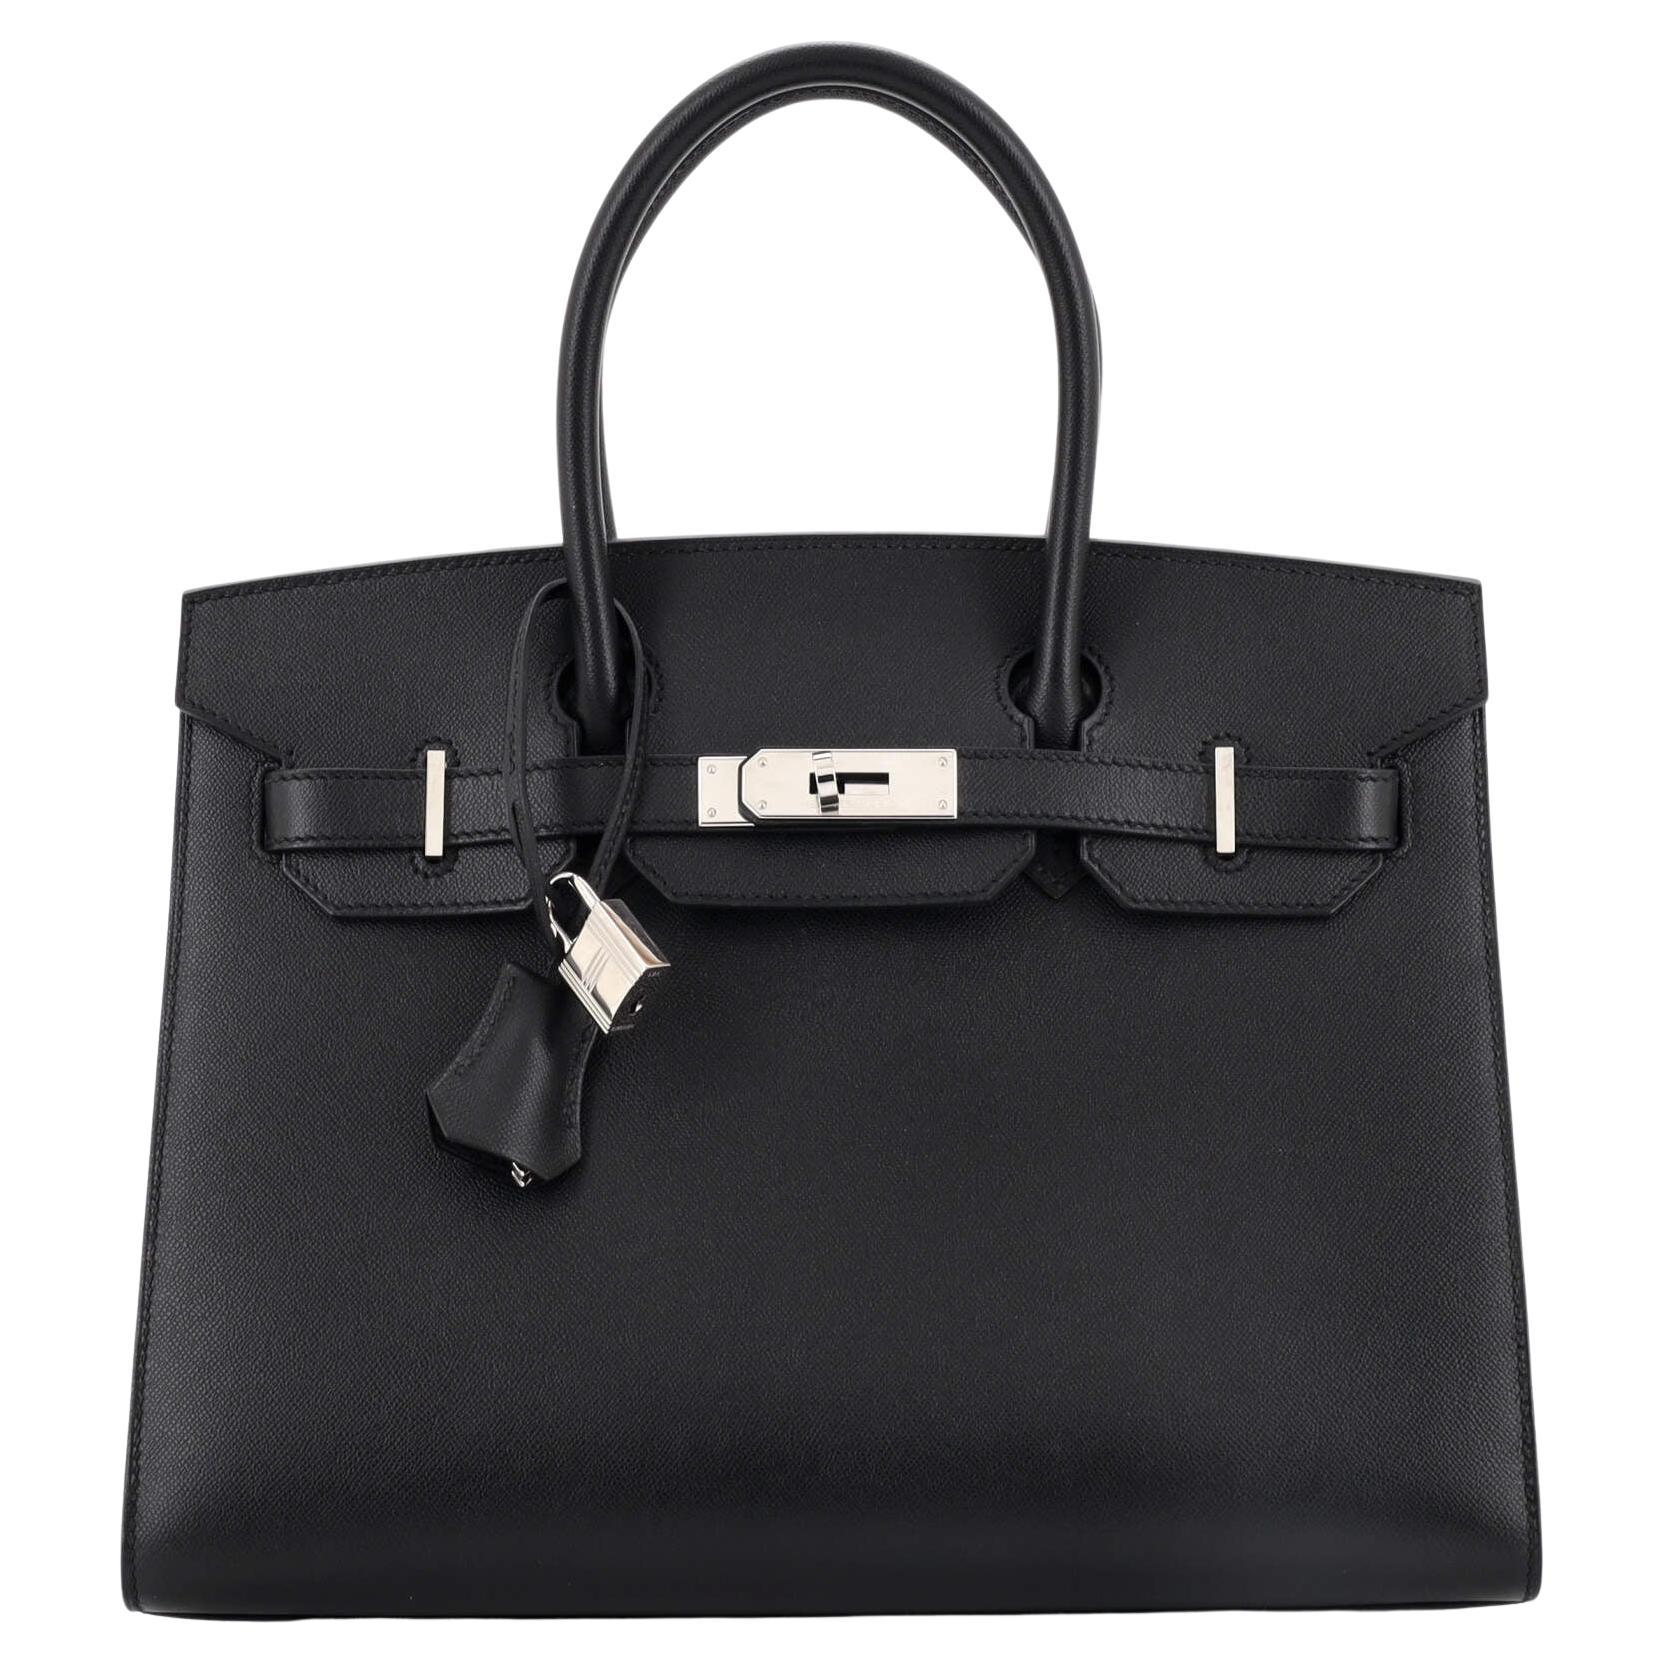 Hermes Birkin Sellier Bag Noir Madame with Palladium Hardware 30